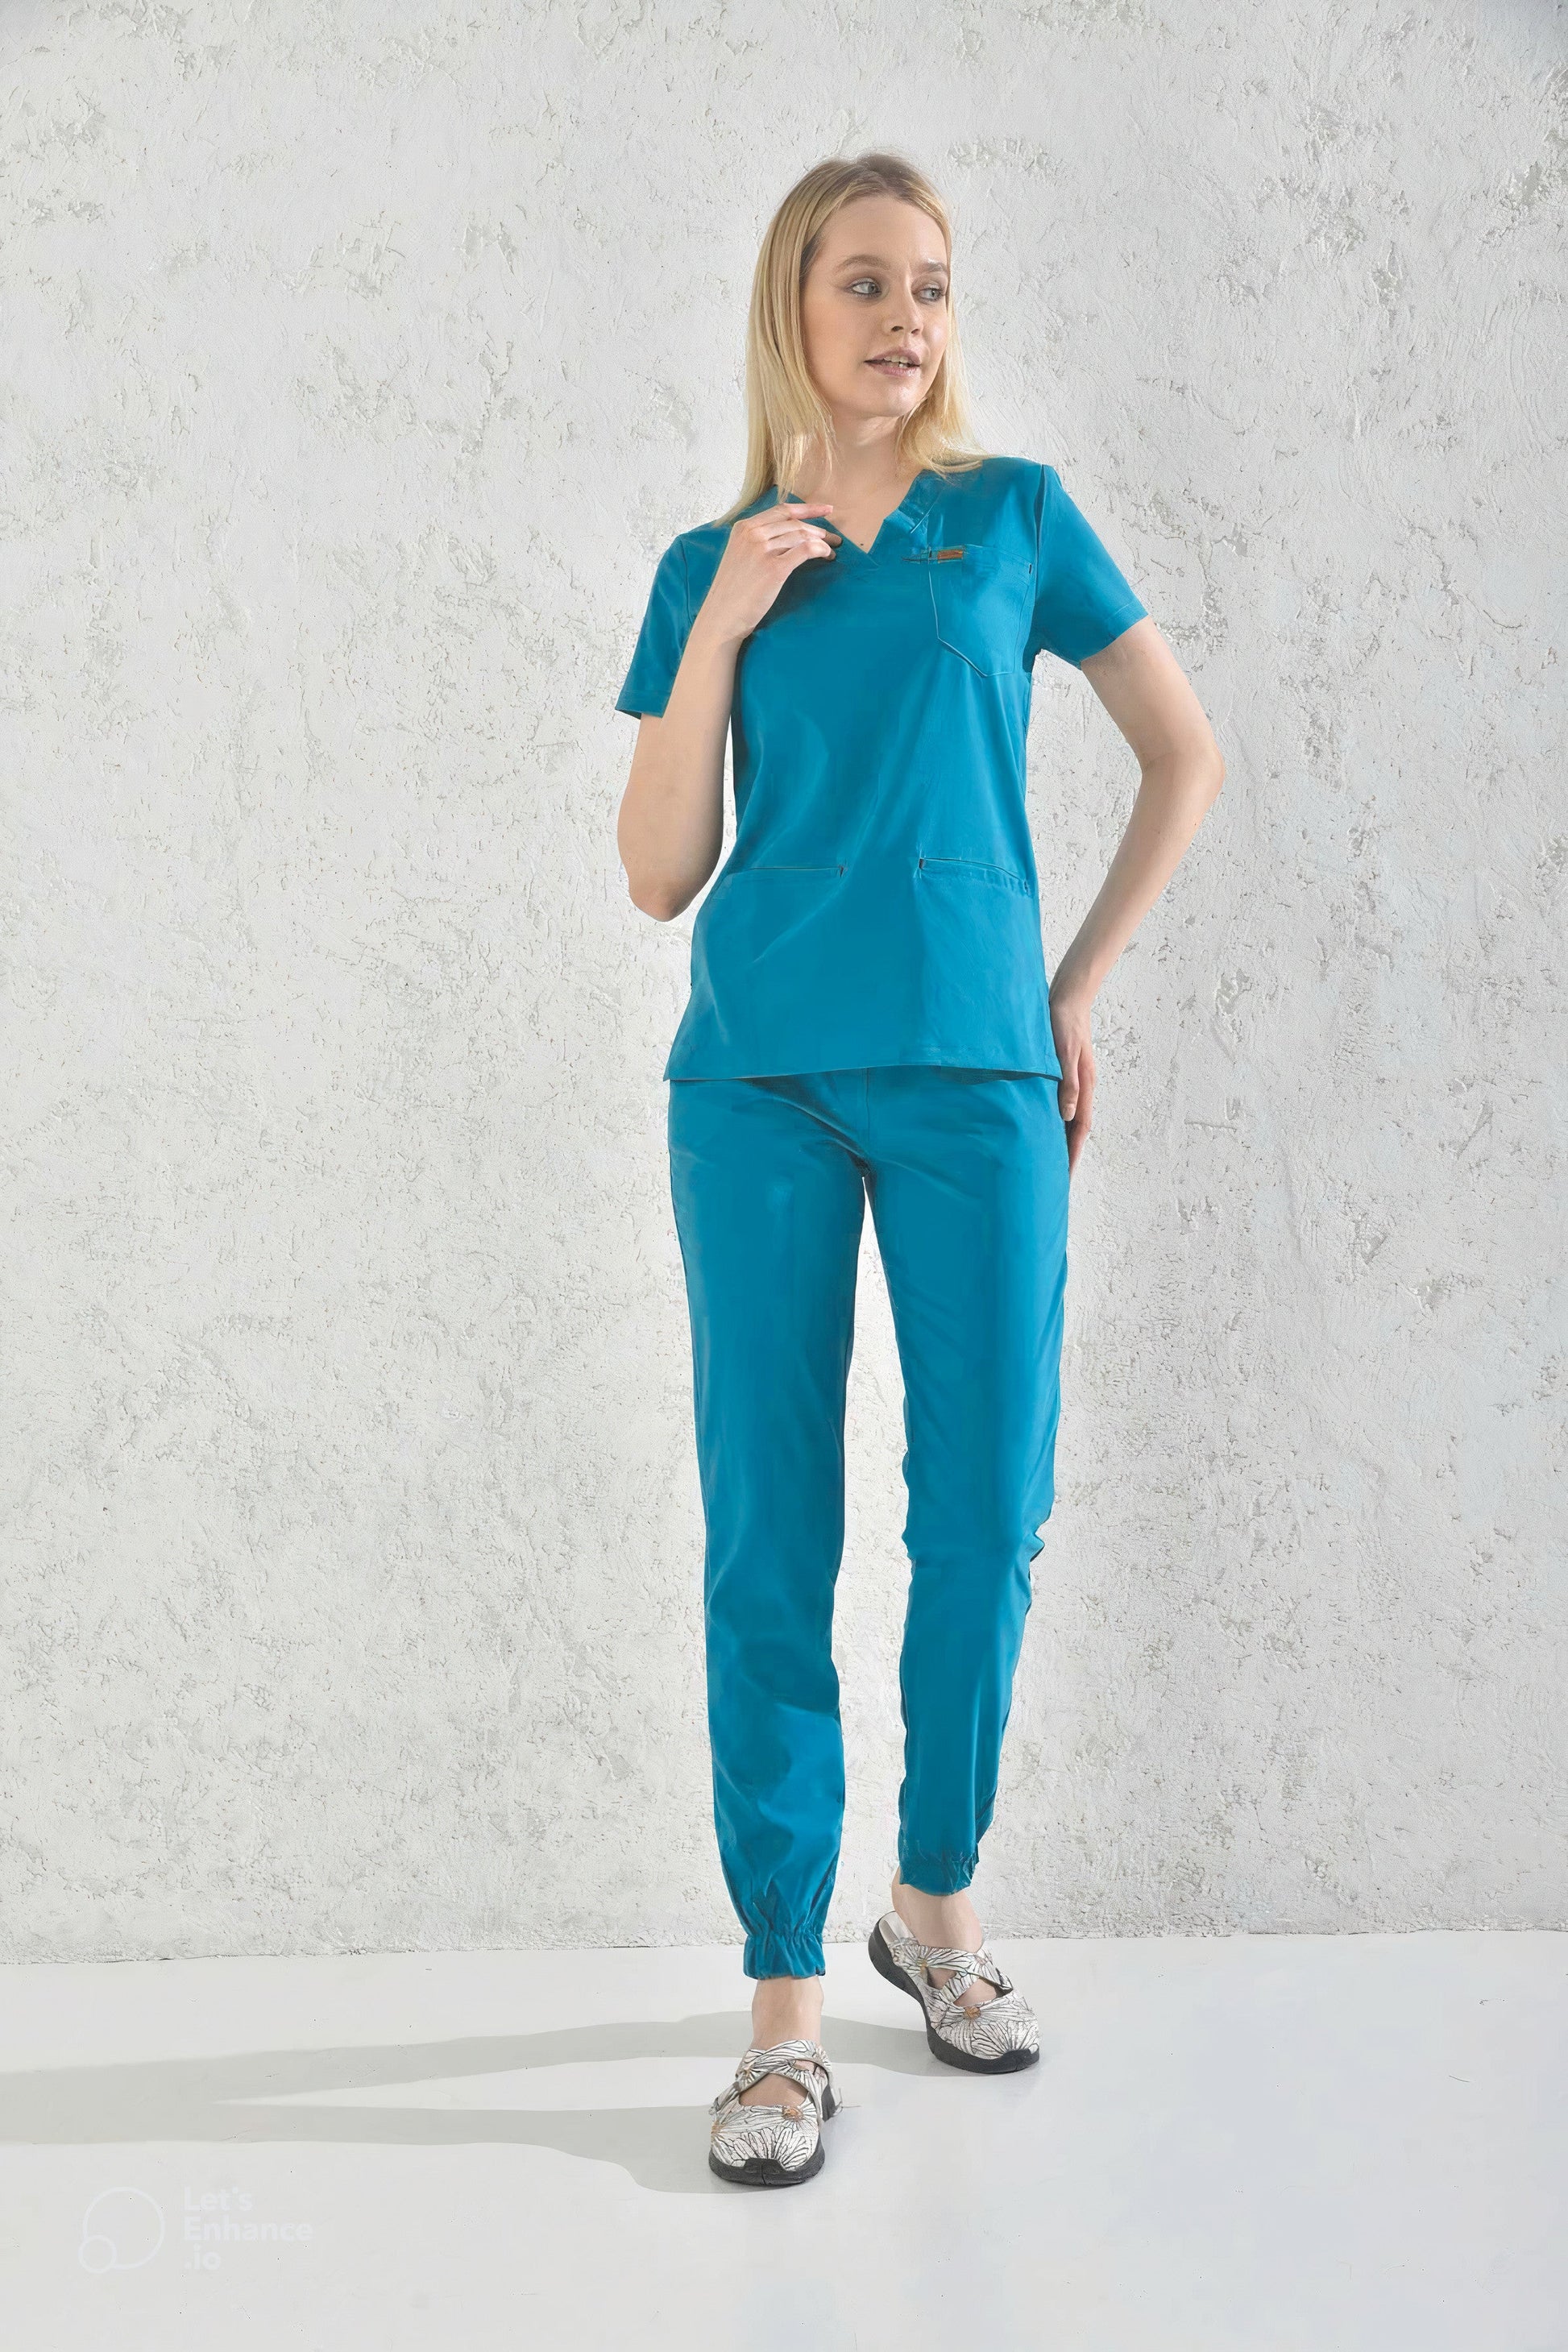 Une femme en pantalon médical bleu cyan Slimfit, uniformes et tenues médicales modernes